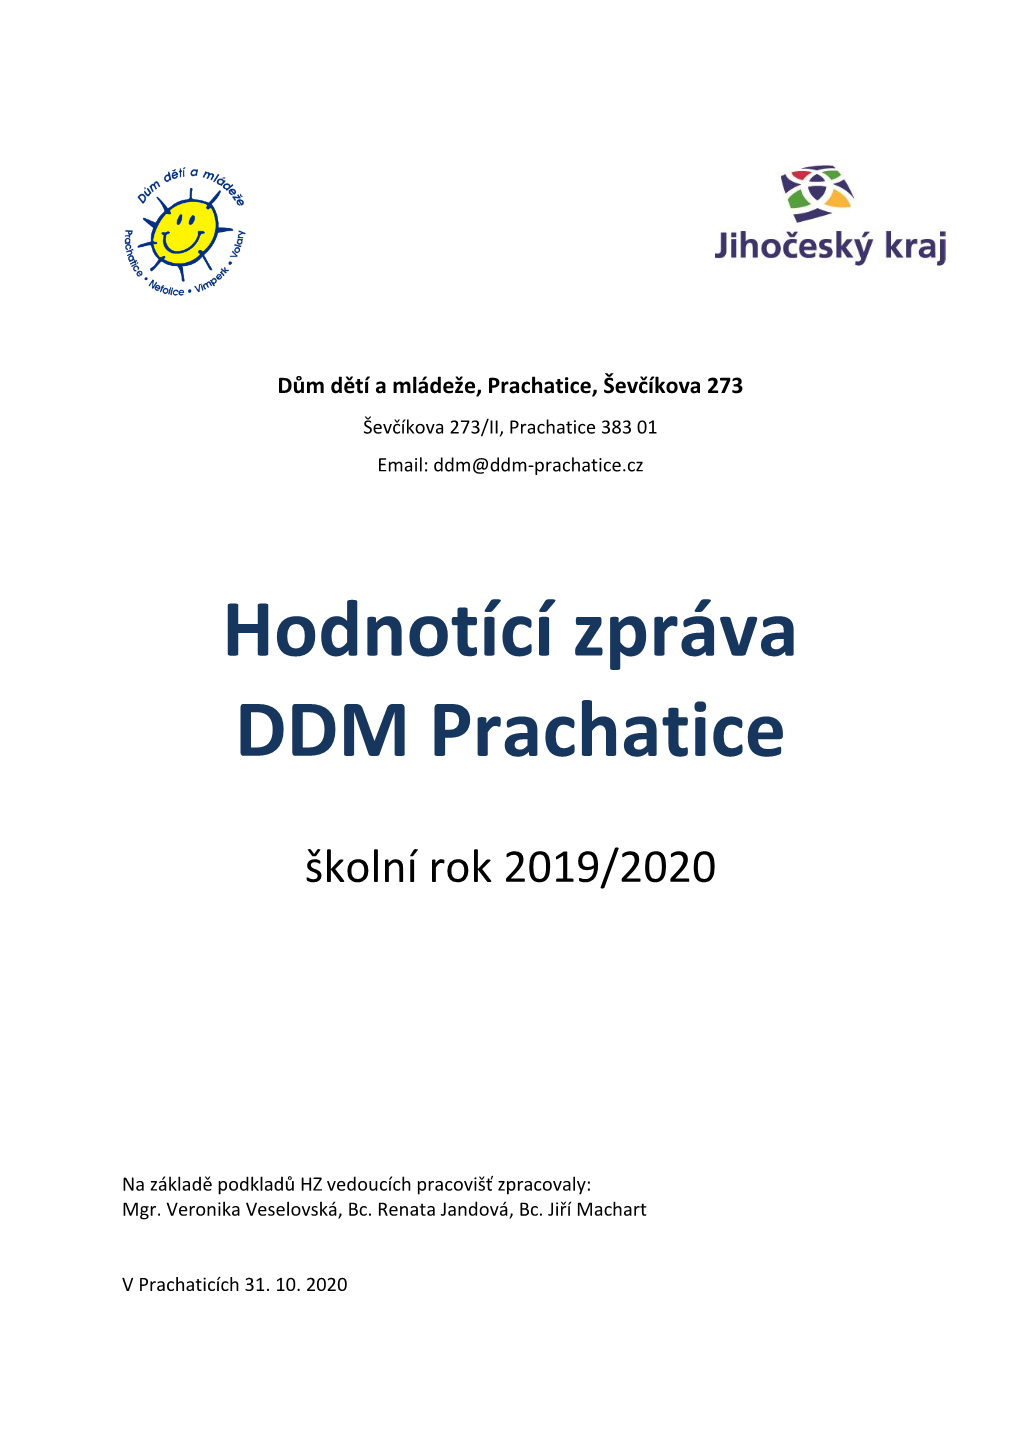 Hodnotící Zpráva DDM Prachatice